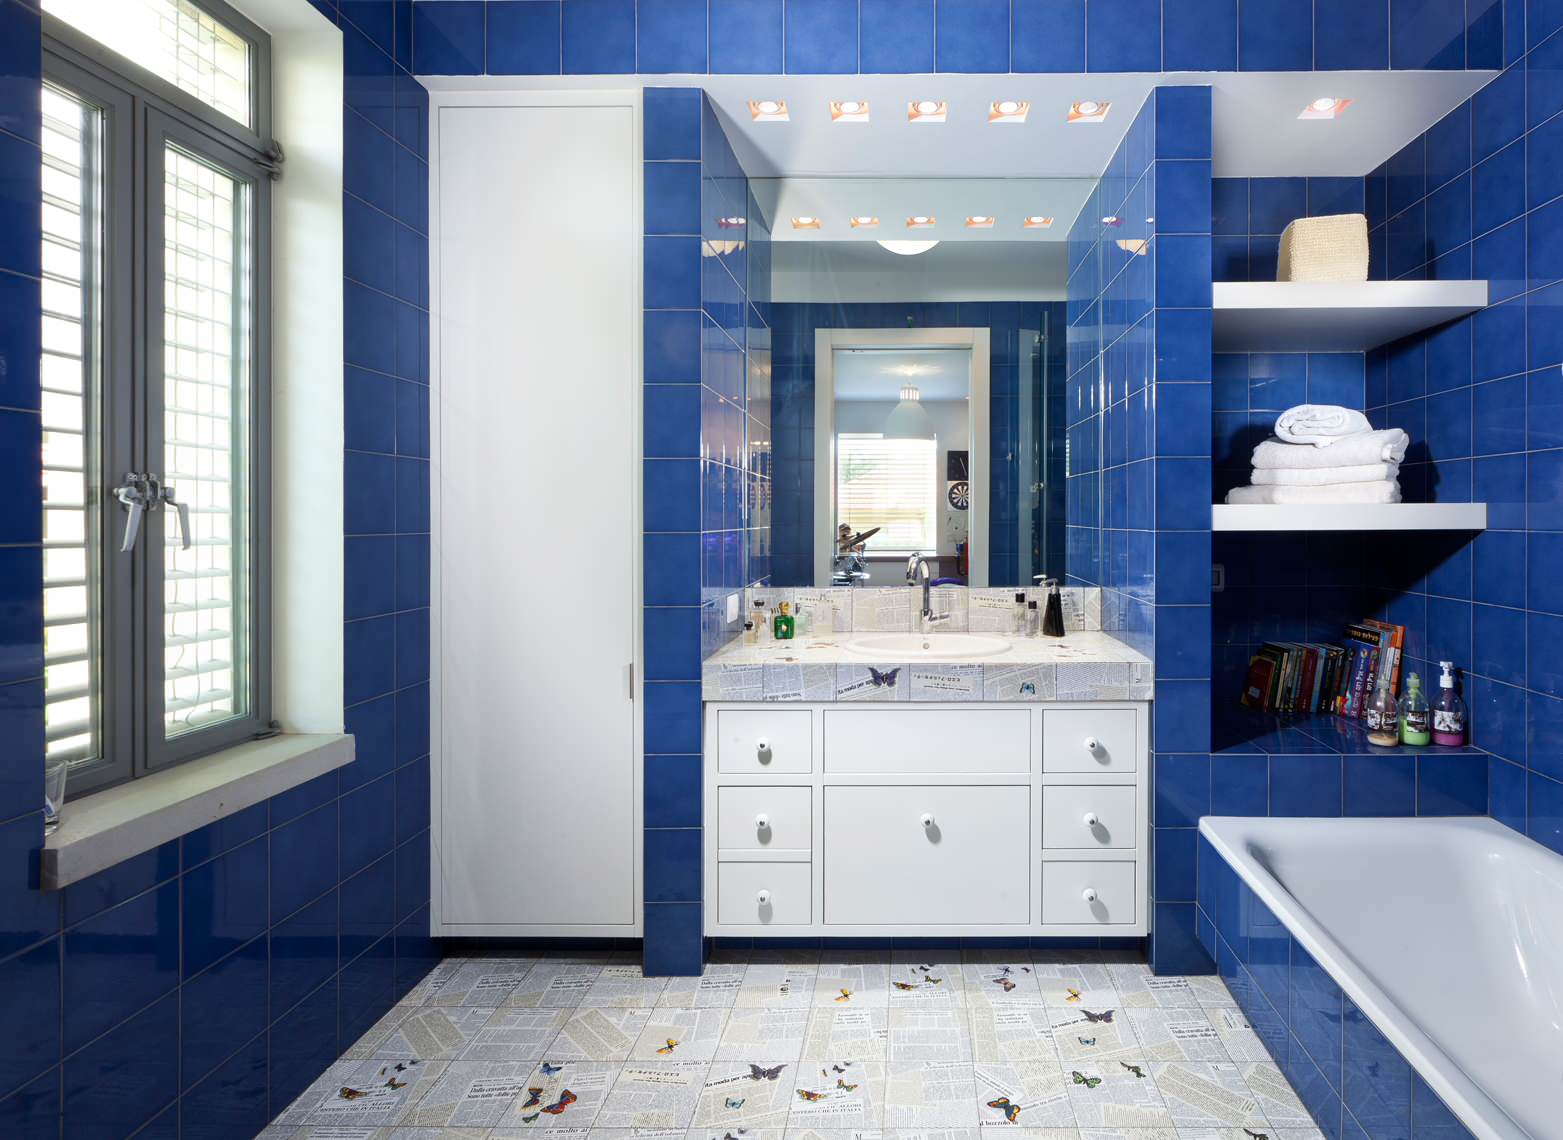 Royal Blue Bathroom Ideas Houzz, Royal Blue Bathroom Decor Ideas